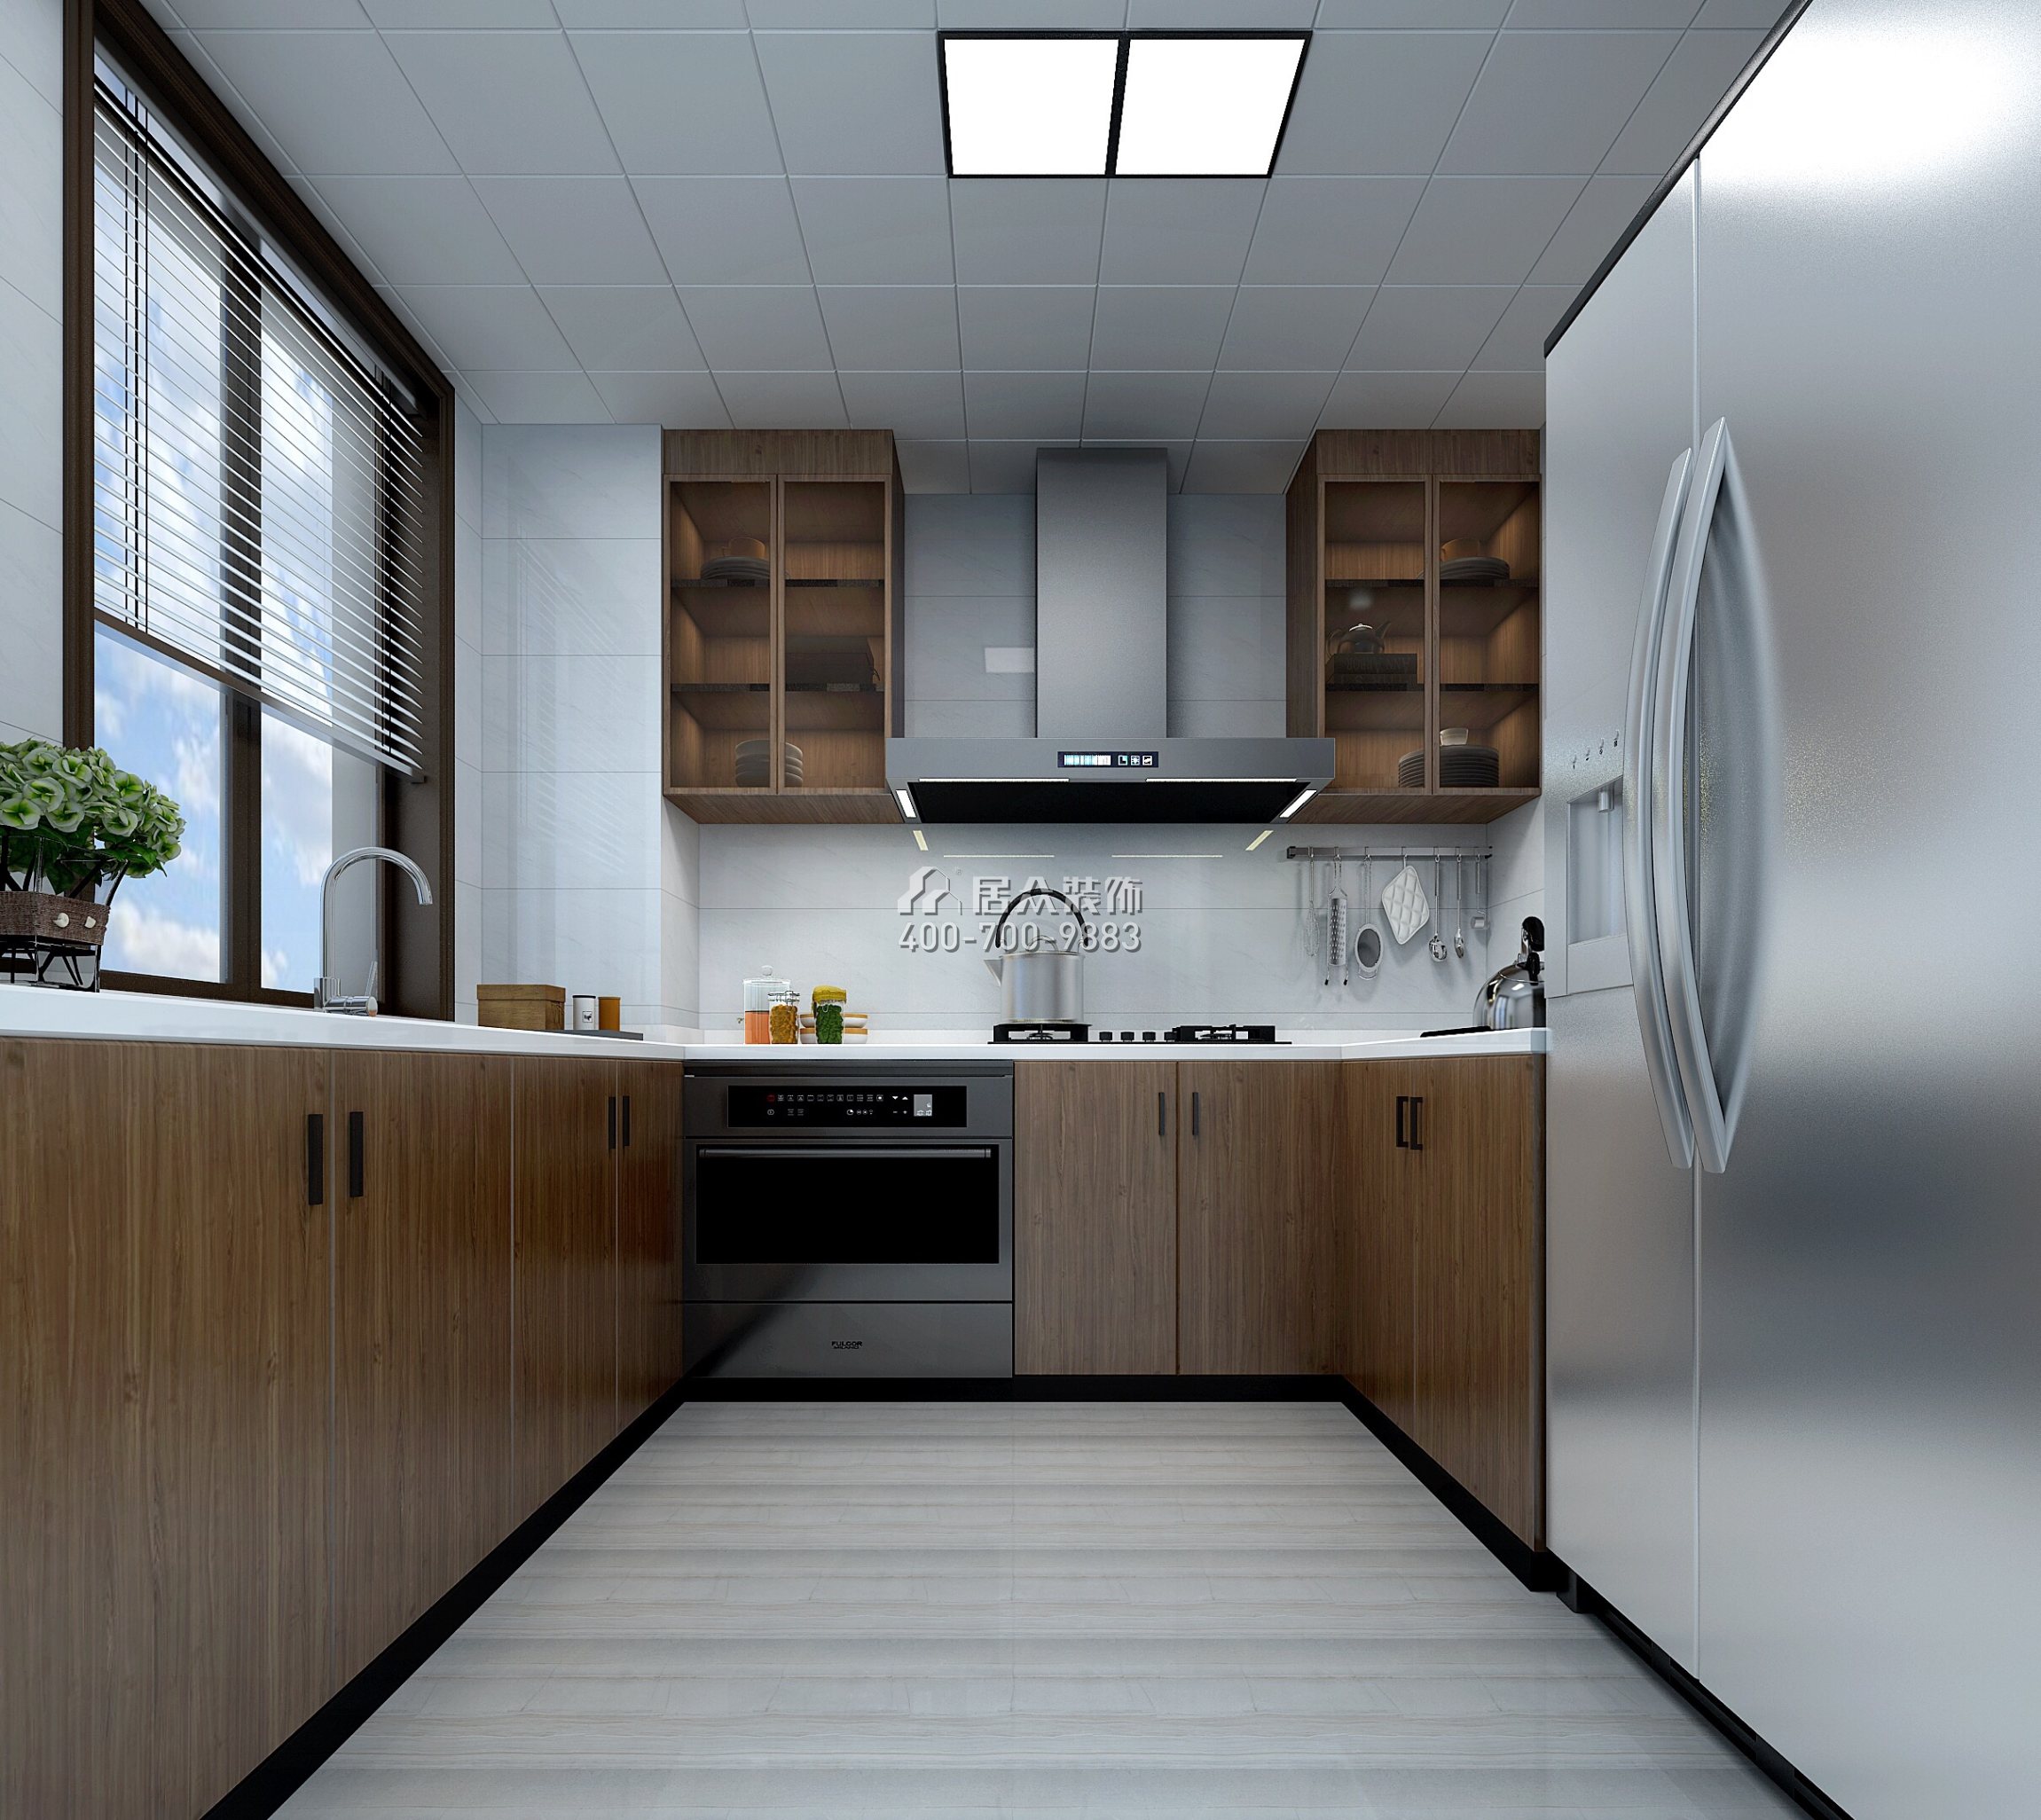 隆生东湖九区155平方米现代简约风格平层户型厨房装修效果图